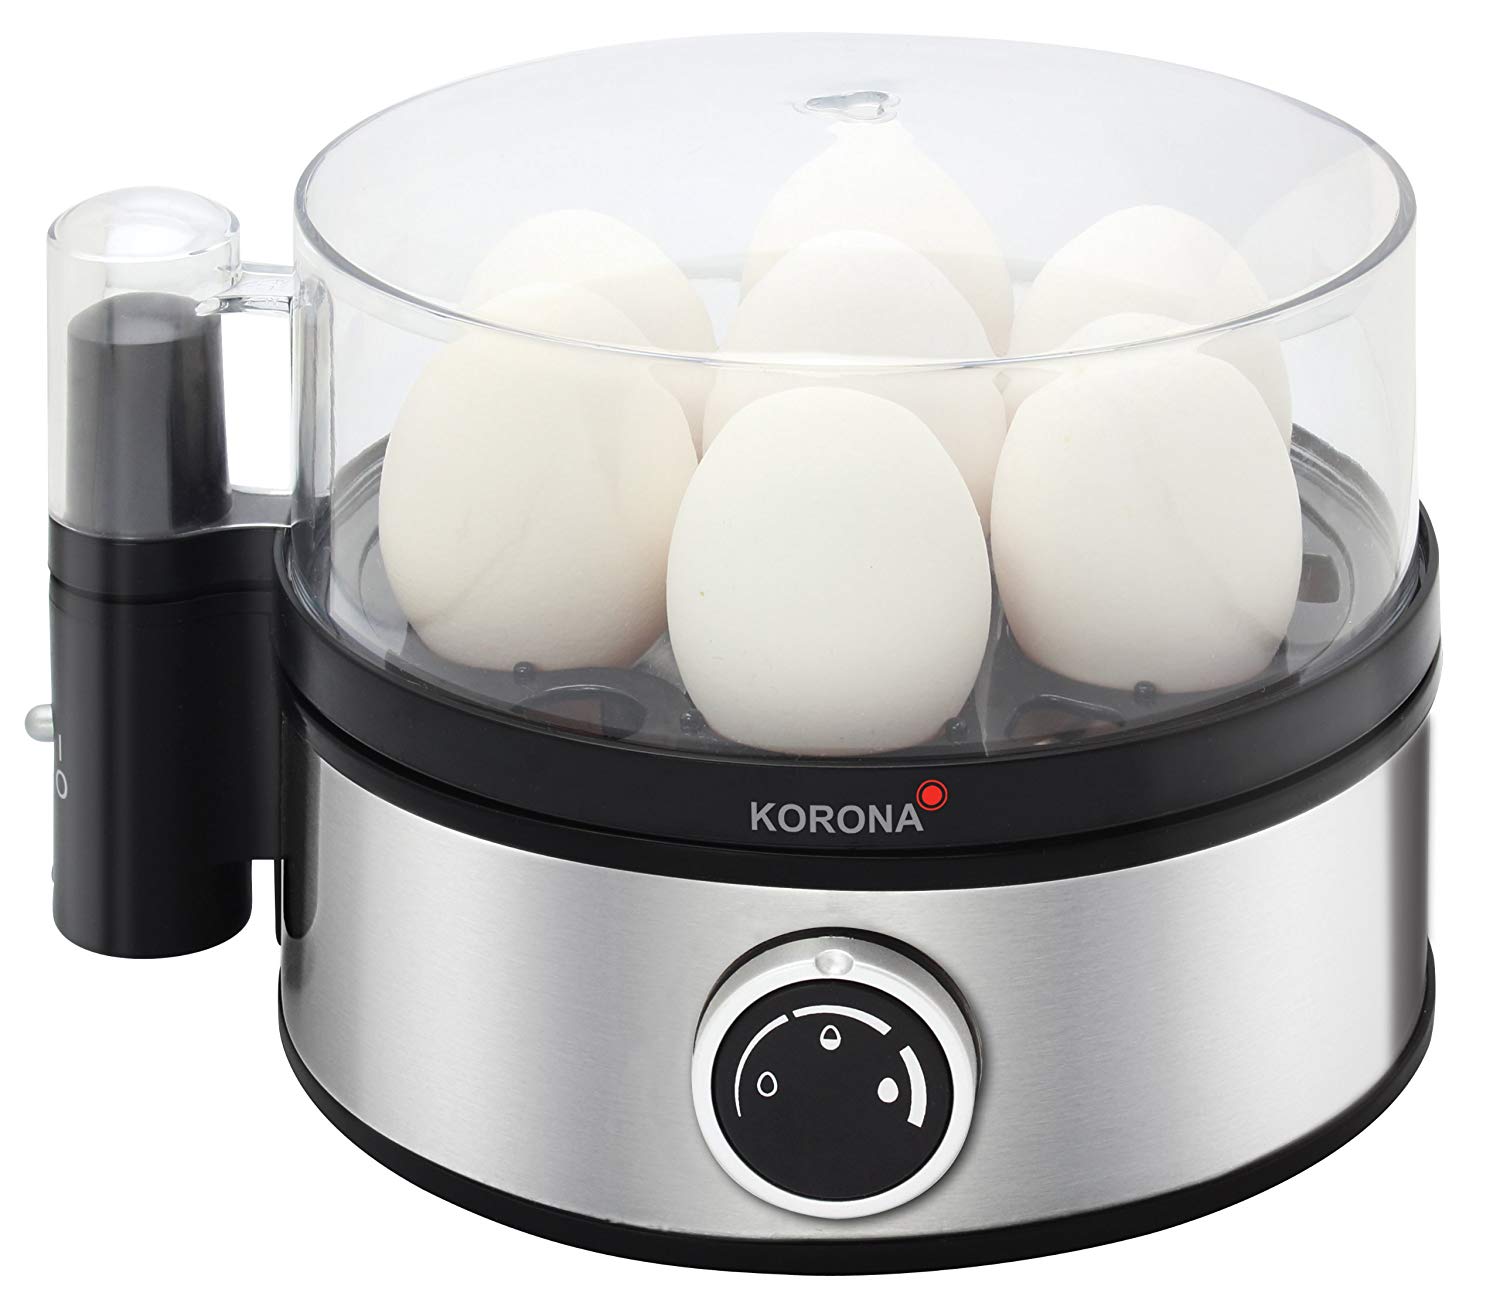 Korona 25302 Egg Boiler, Stainless Steel/Black